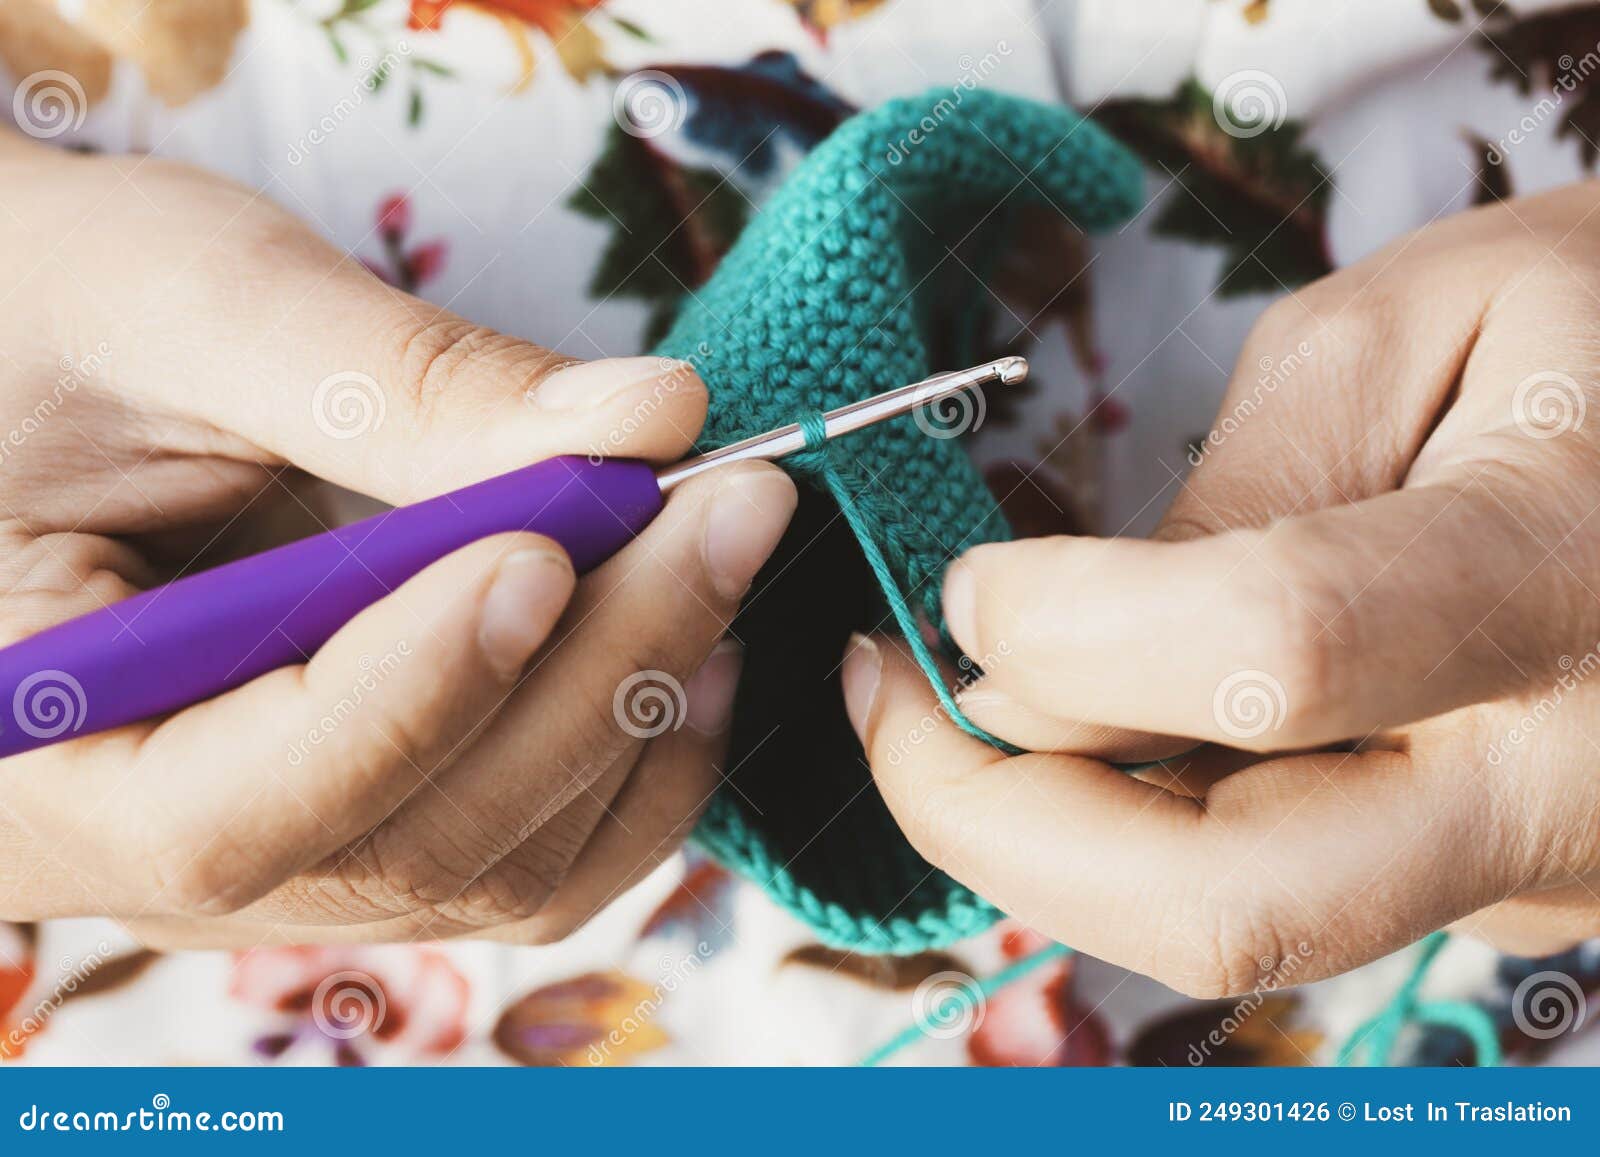 manos de mujer haciendo crcohet con un punto de vista cercano. hobby casero concepto artesanal